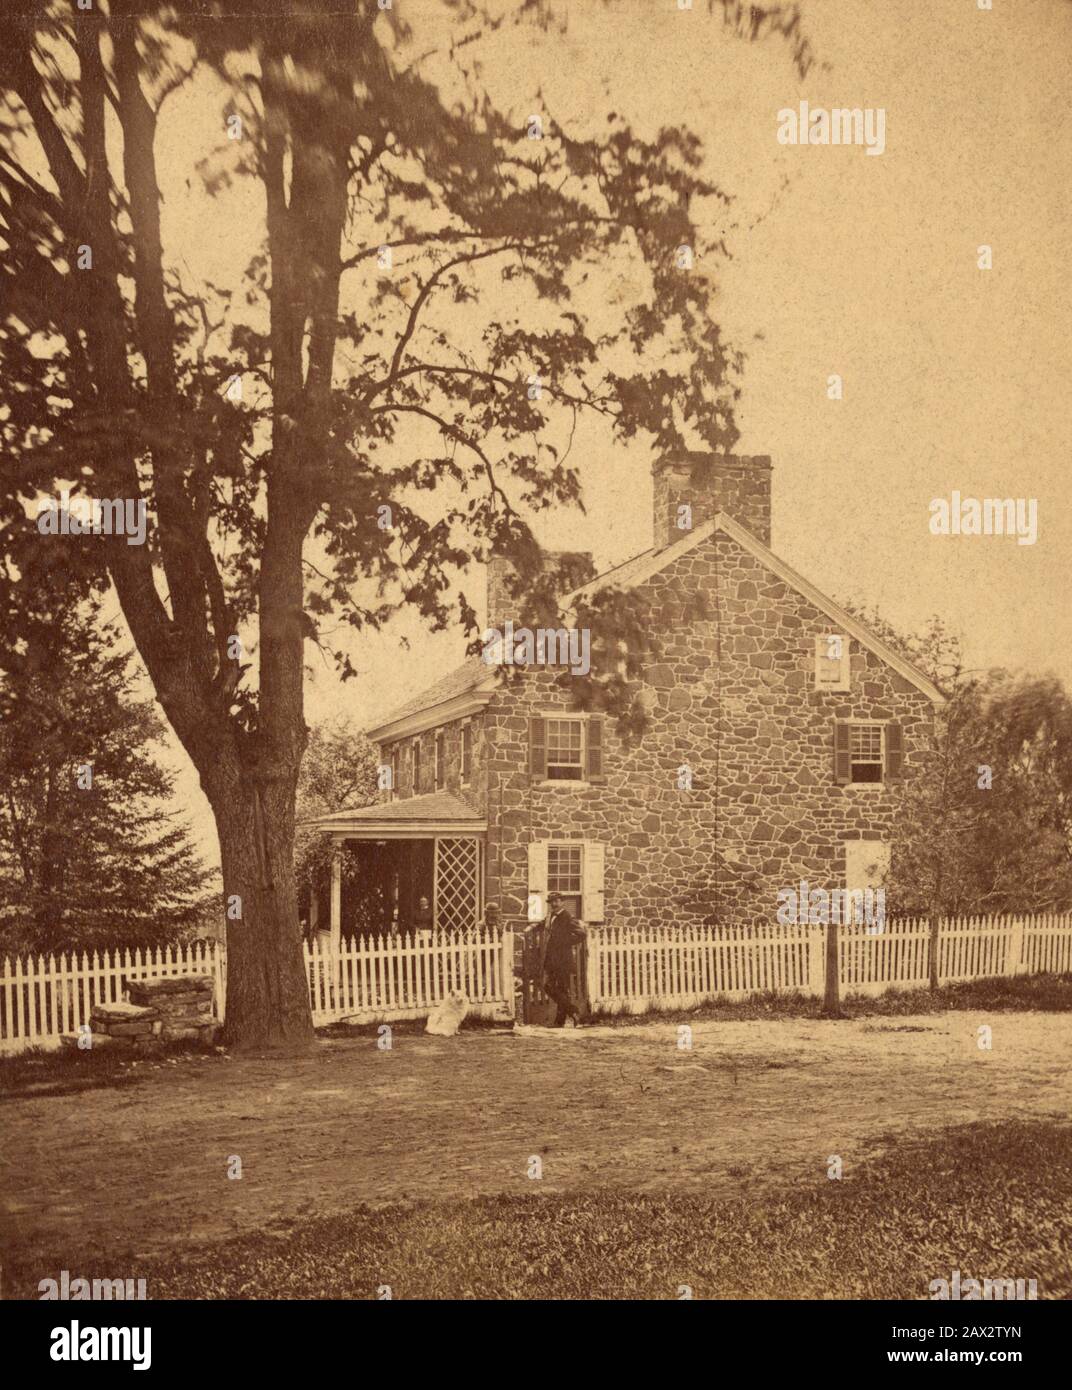 1872, USA: Ländliches Haus von mister D. Gualt in Birmingham, vom Fotografen Chester County, Pennsylvania. Foto von S.R. Fisher Landscape Fotograf 226 Main St. Norristown. - INGHILTERRA - GRAND BRETAGNA - FOTO STORICHE - HISTORIENFOTOS - CASA - HOME - ABITAZIONE - country - Campagna - FAMILIE - FAMIGLIA - STOCK - ARCHITEKTUR - ARCHITETTURA - GEOGRAFIA - GEOGRAPHIE - GARTEN - GIARDINO - Albero - tress - Hund - Rohrvolpino - - - - - -- - Archivio GBB Stockfoto